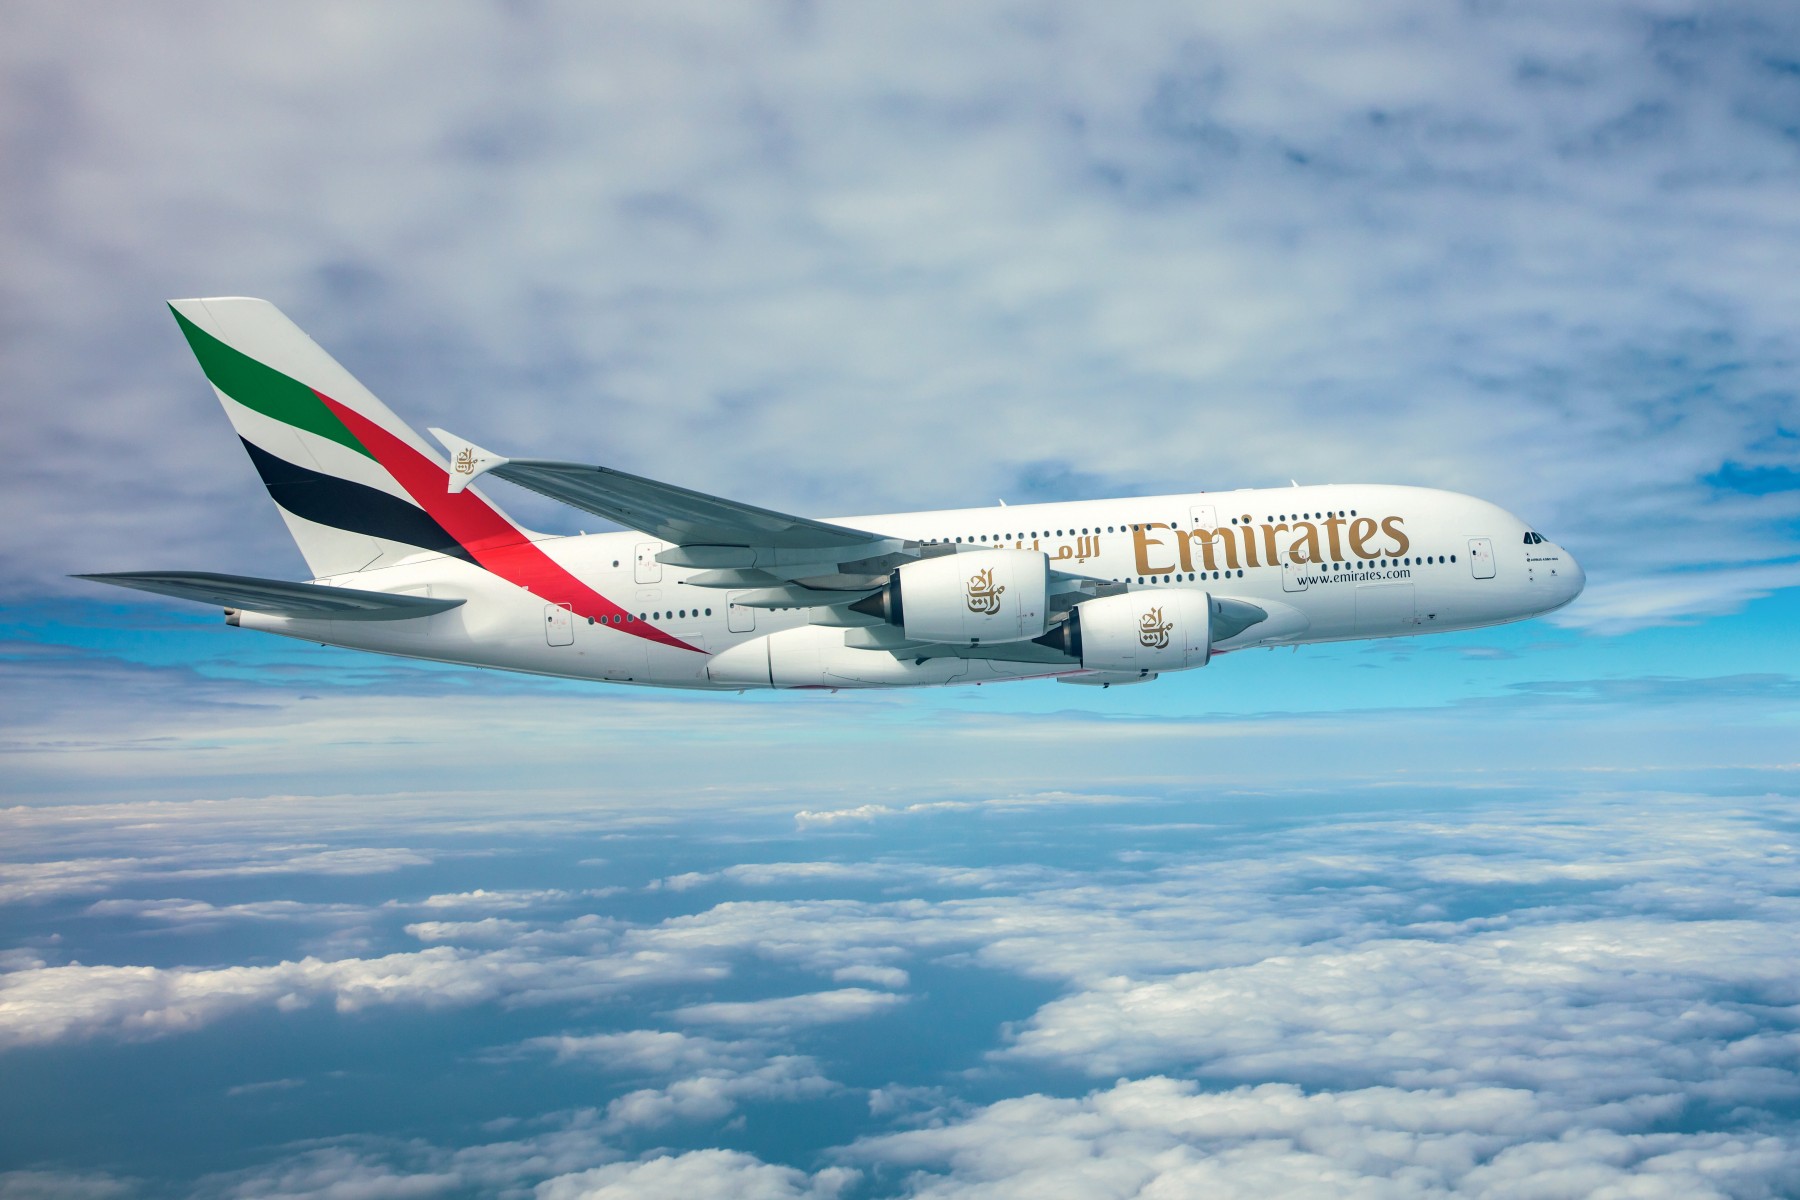 Emirates SkyCargo Airbus A380